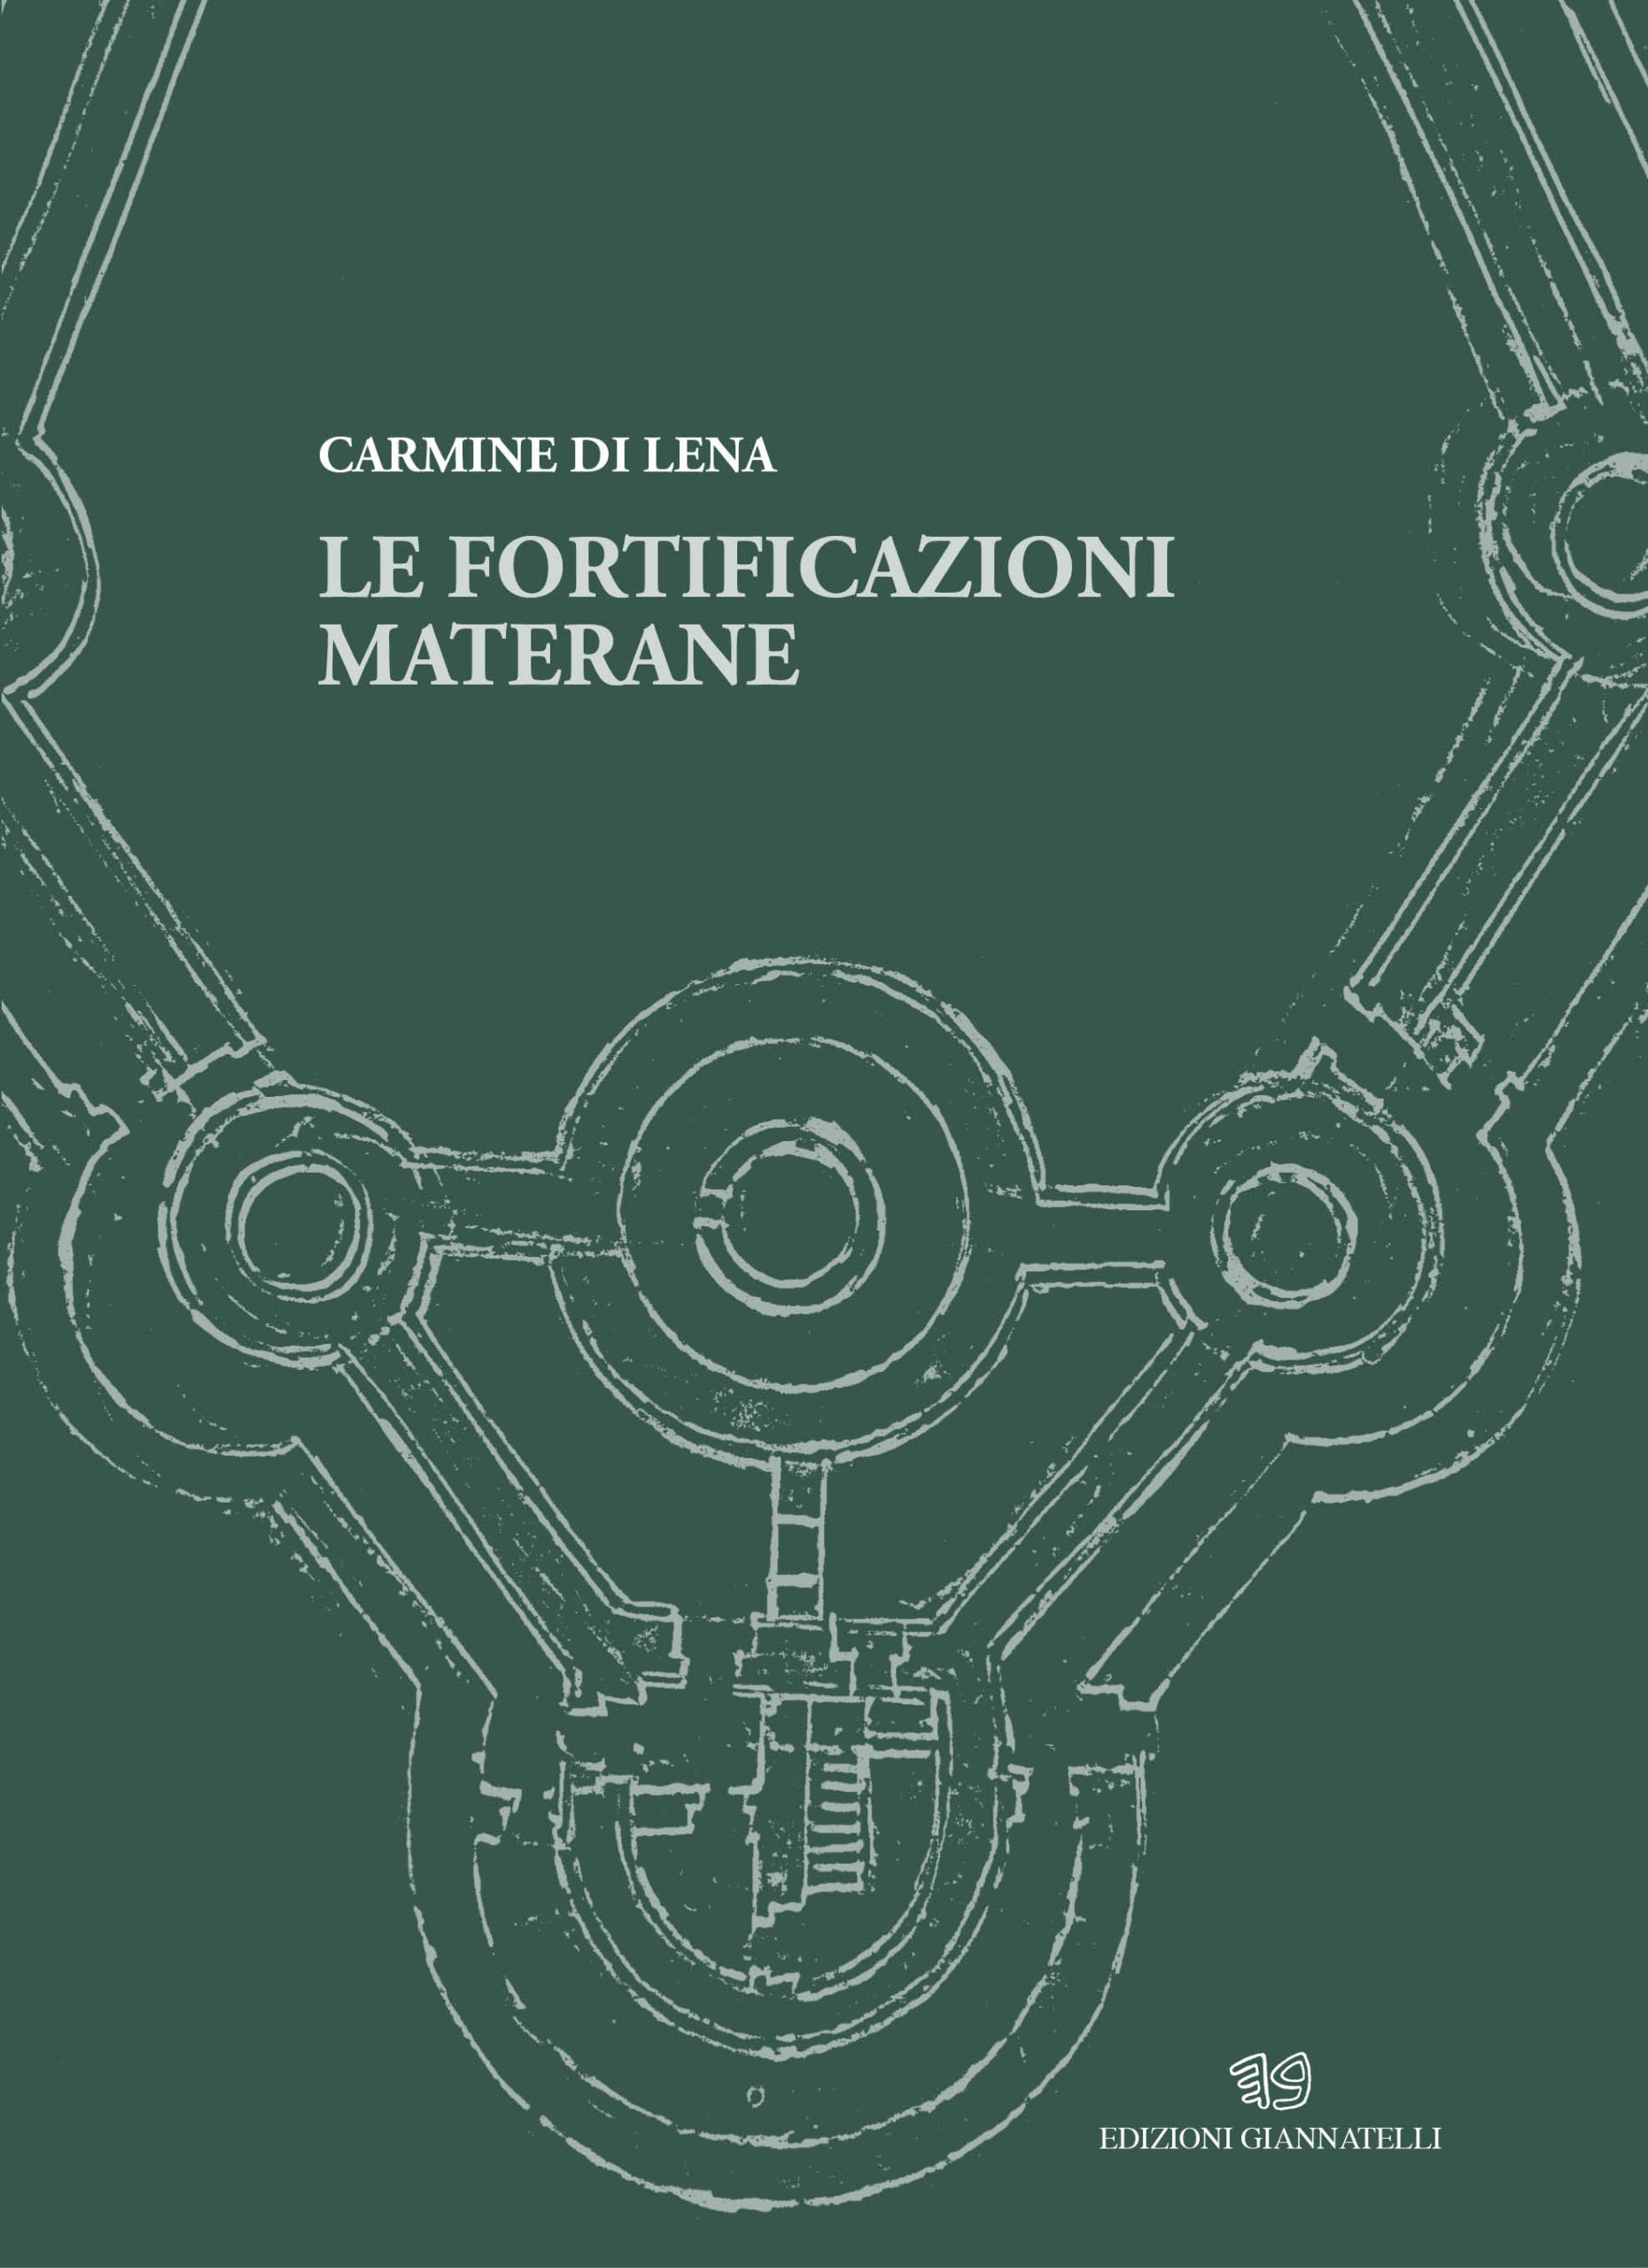 Matera, il 6 presentazione del volume di Carmine Di Lena  “Le fortificazioni materane”